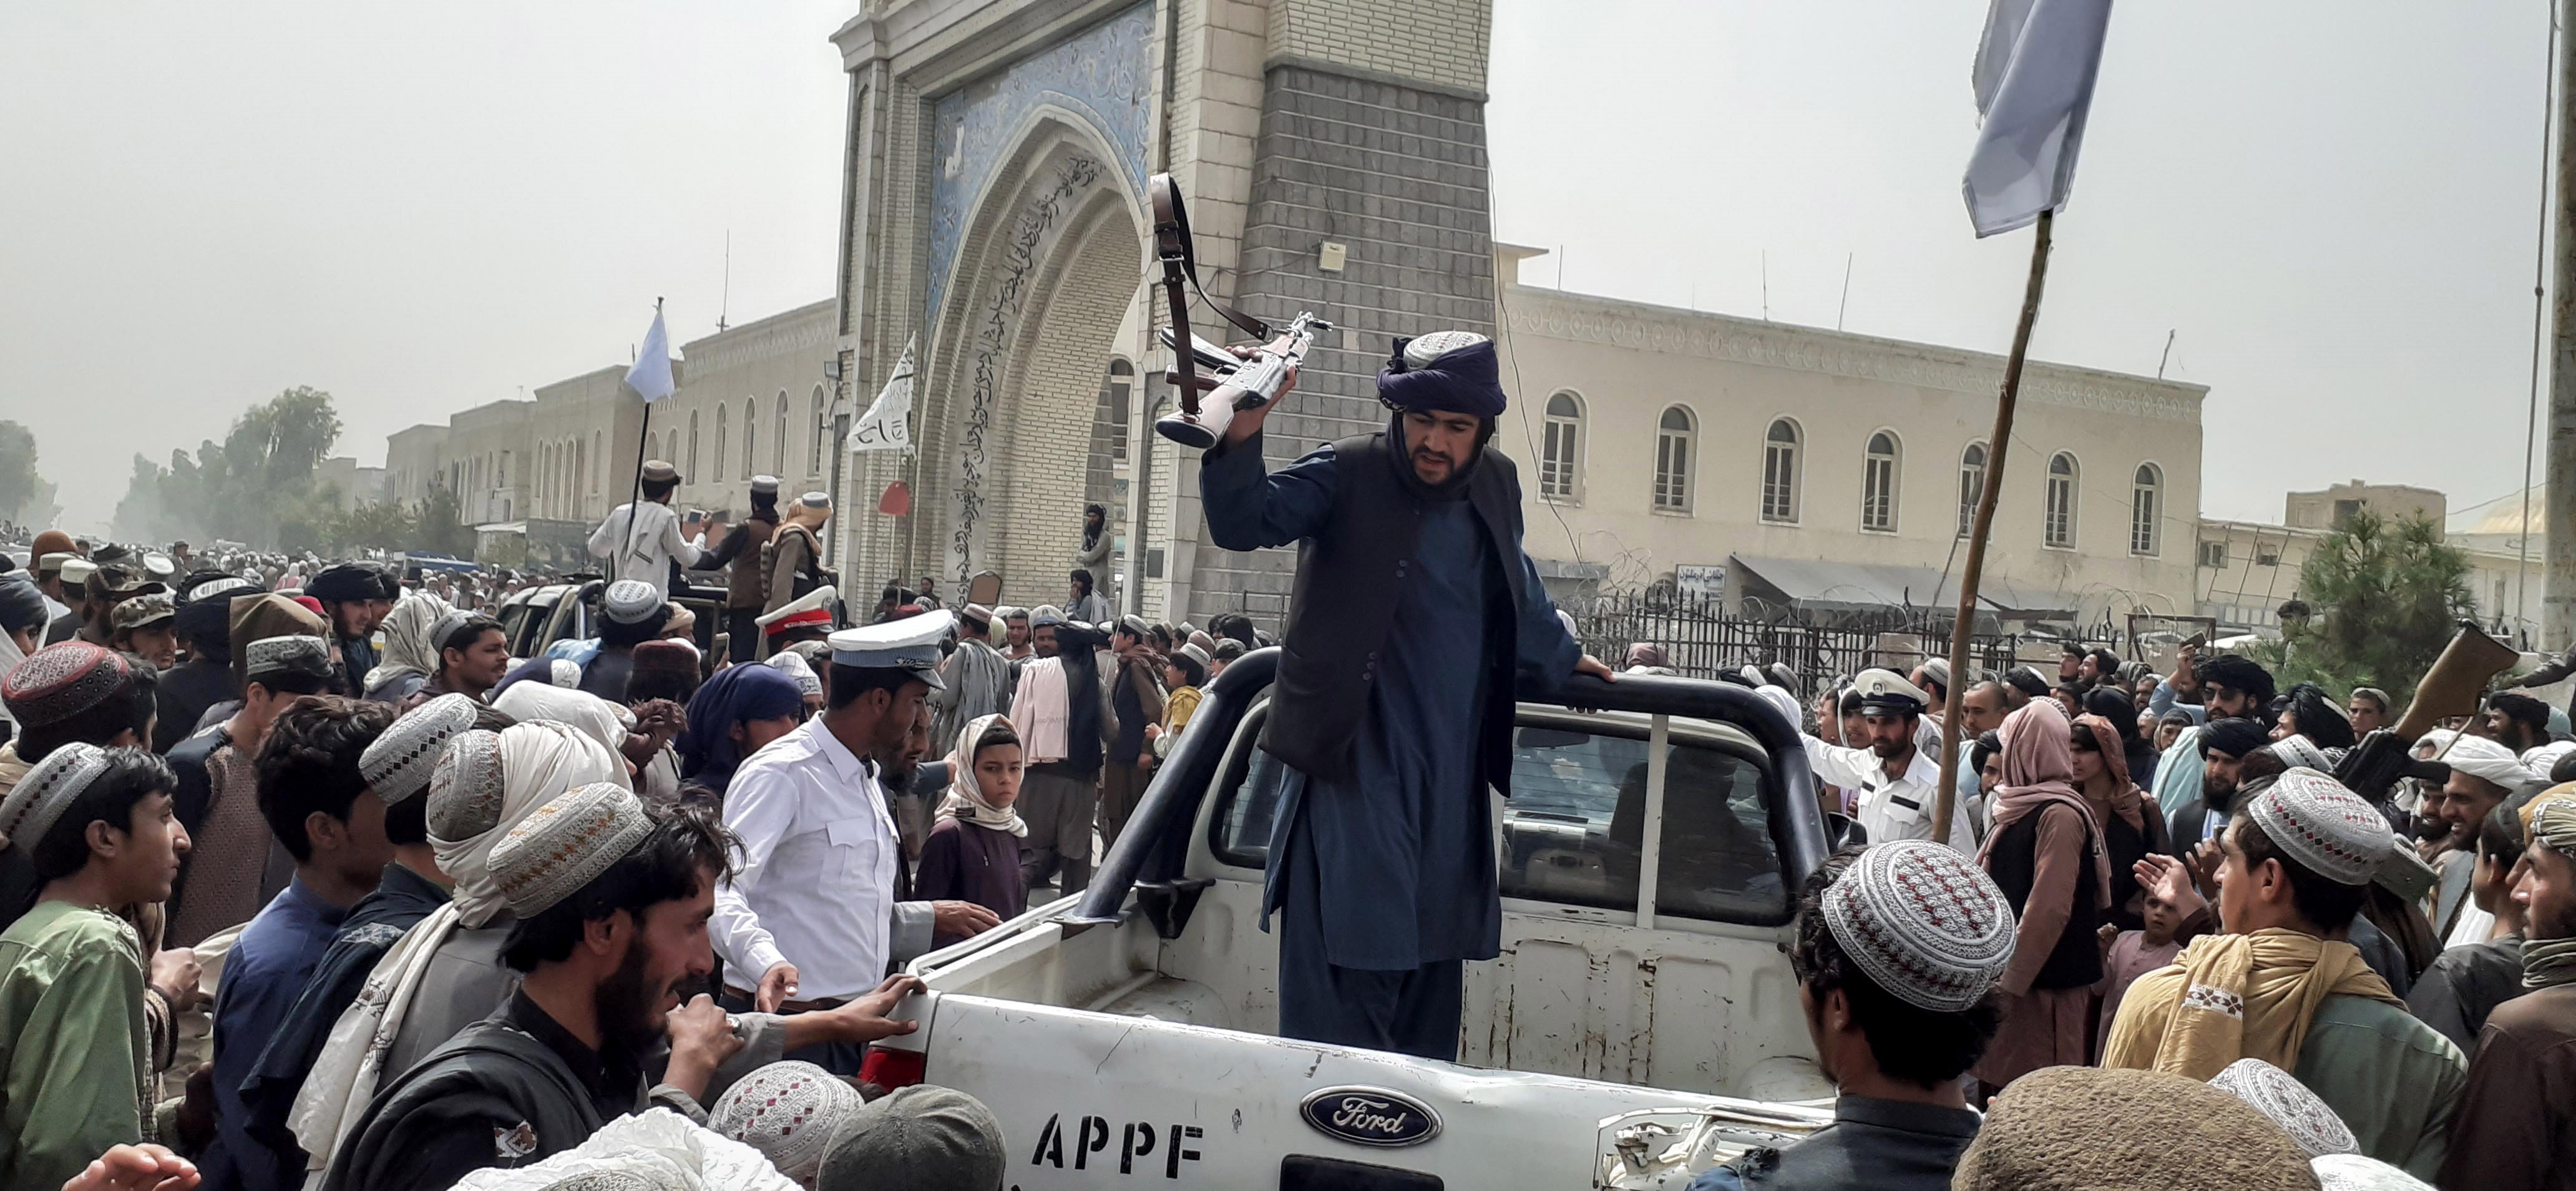 Los habitantes aseguran que los talibanes han comenzado a sembrar el terror (foto: EFE/STRINGER)
